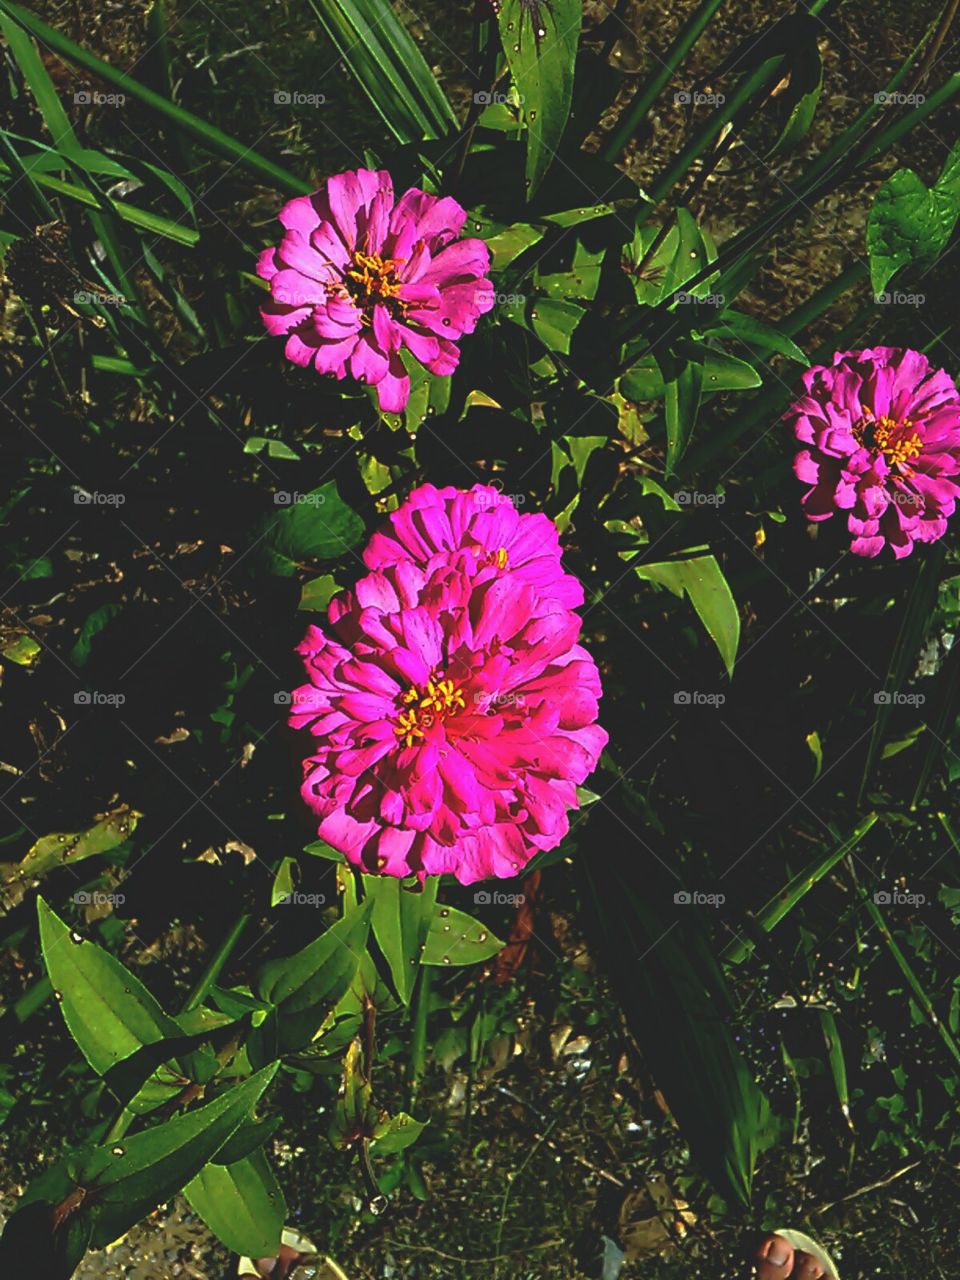 flowers in september